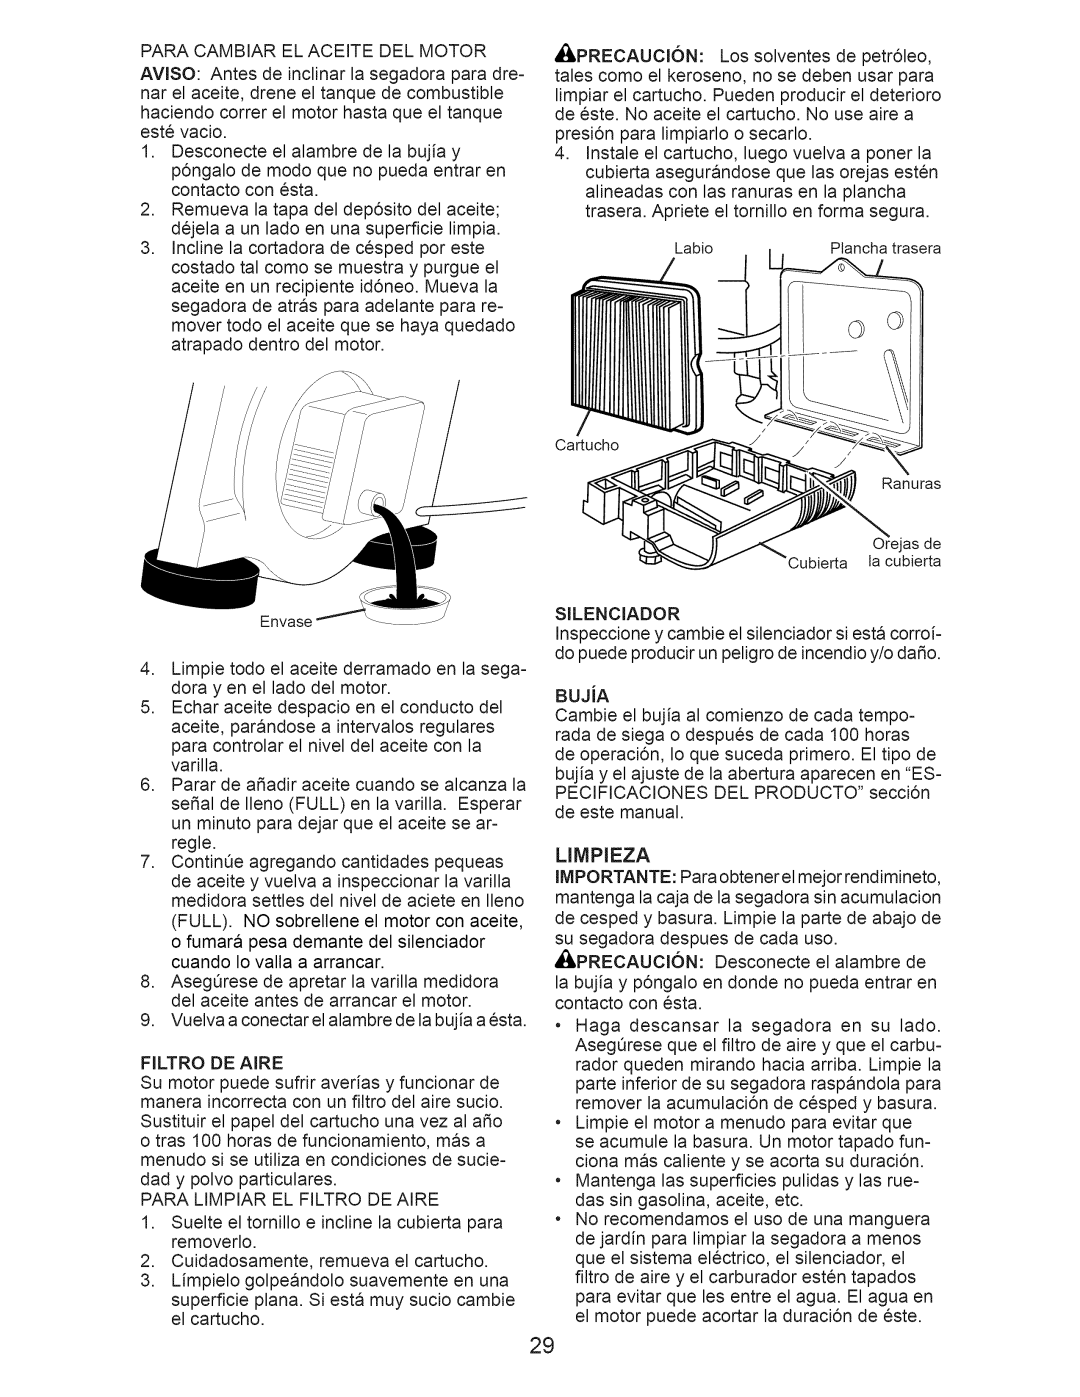 Craftsman 917.389010 manual BUJiA, Limpieza 